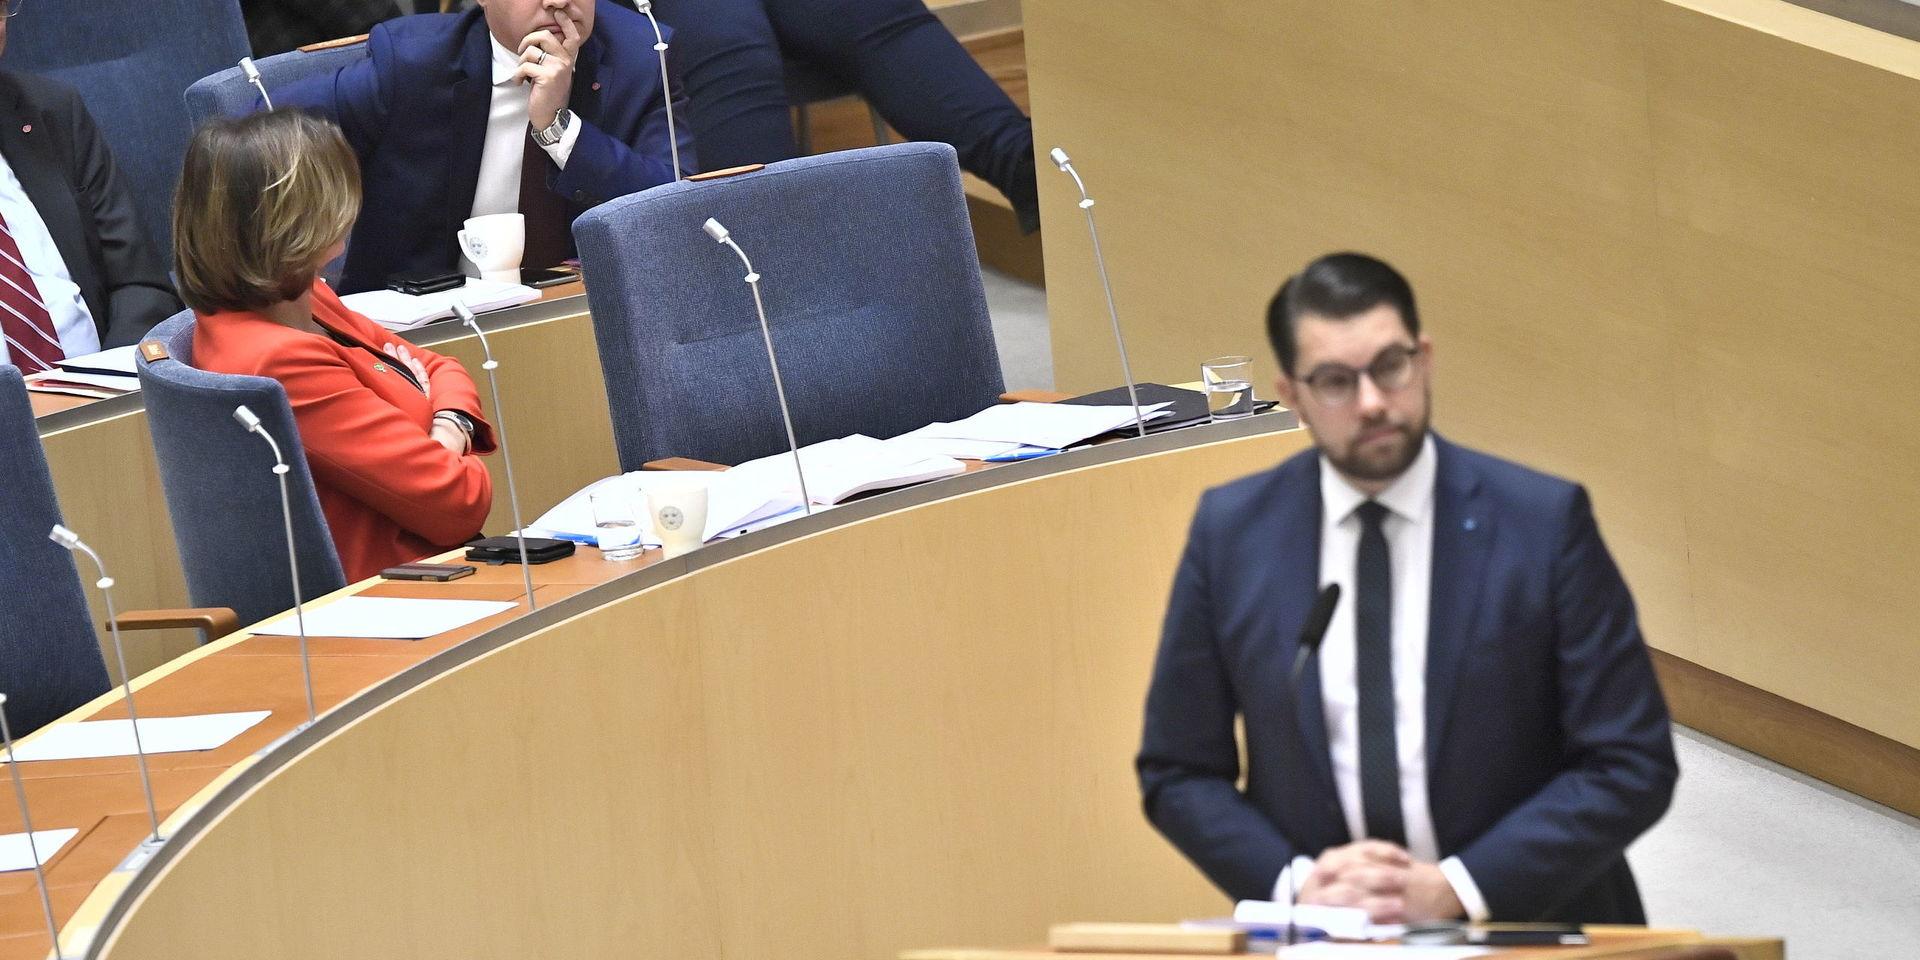 Justitie- och migrationsminister Morgan Johansson (S) och Sverigedemokraternas partiledare Jimmie Åkesson (SD) under den EU-politiska partiledardebatten i riksdagshuset.